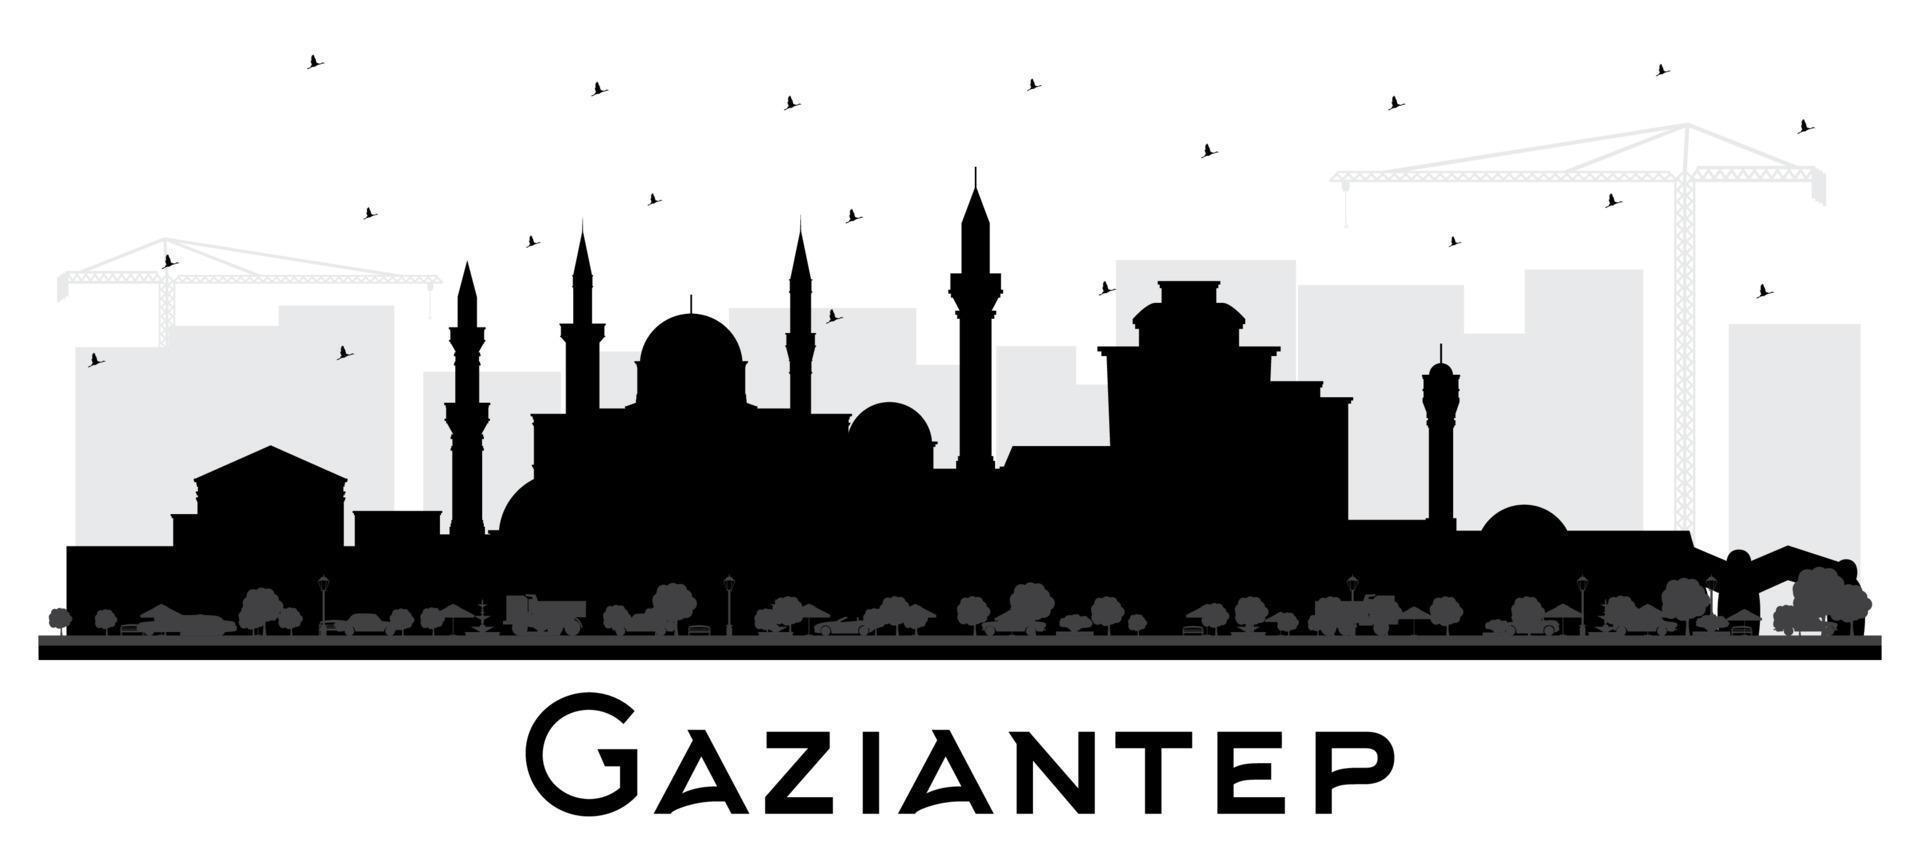 gaziantep turquie silhouette d'horizon de la ville avec des bâtiments noirs isolés sur blanc. vecteur